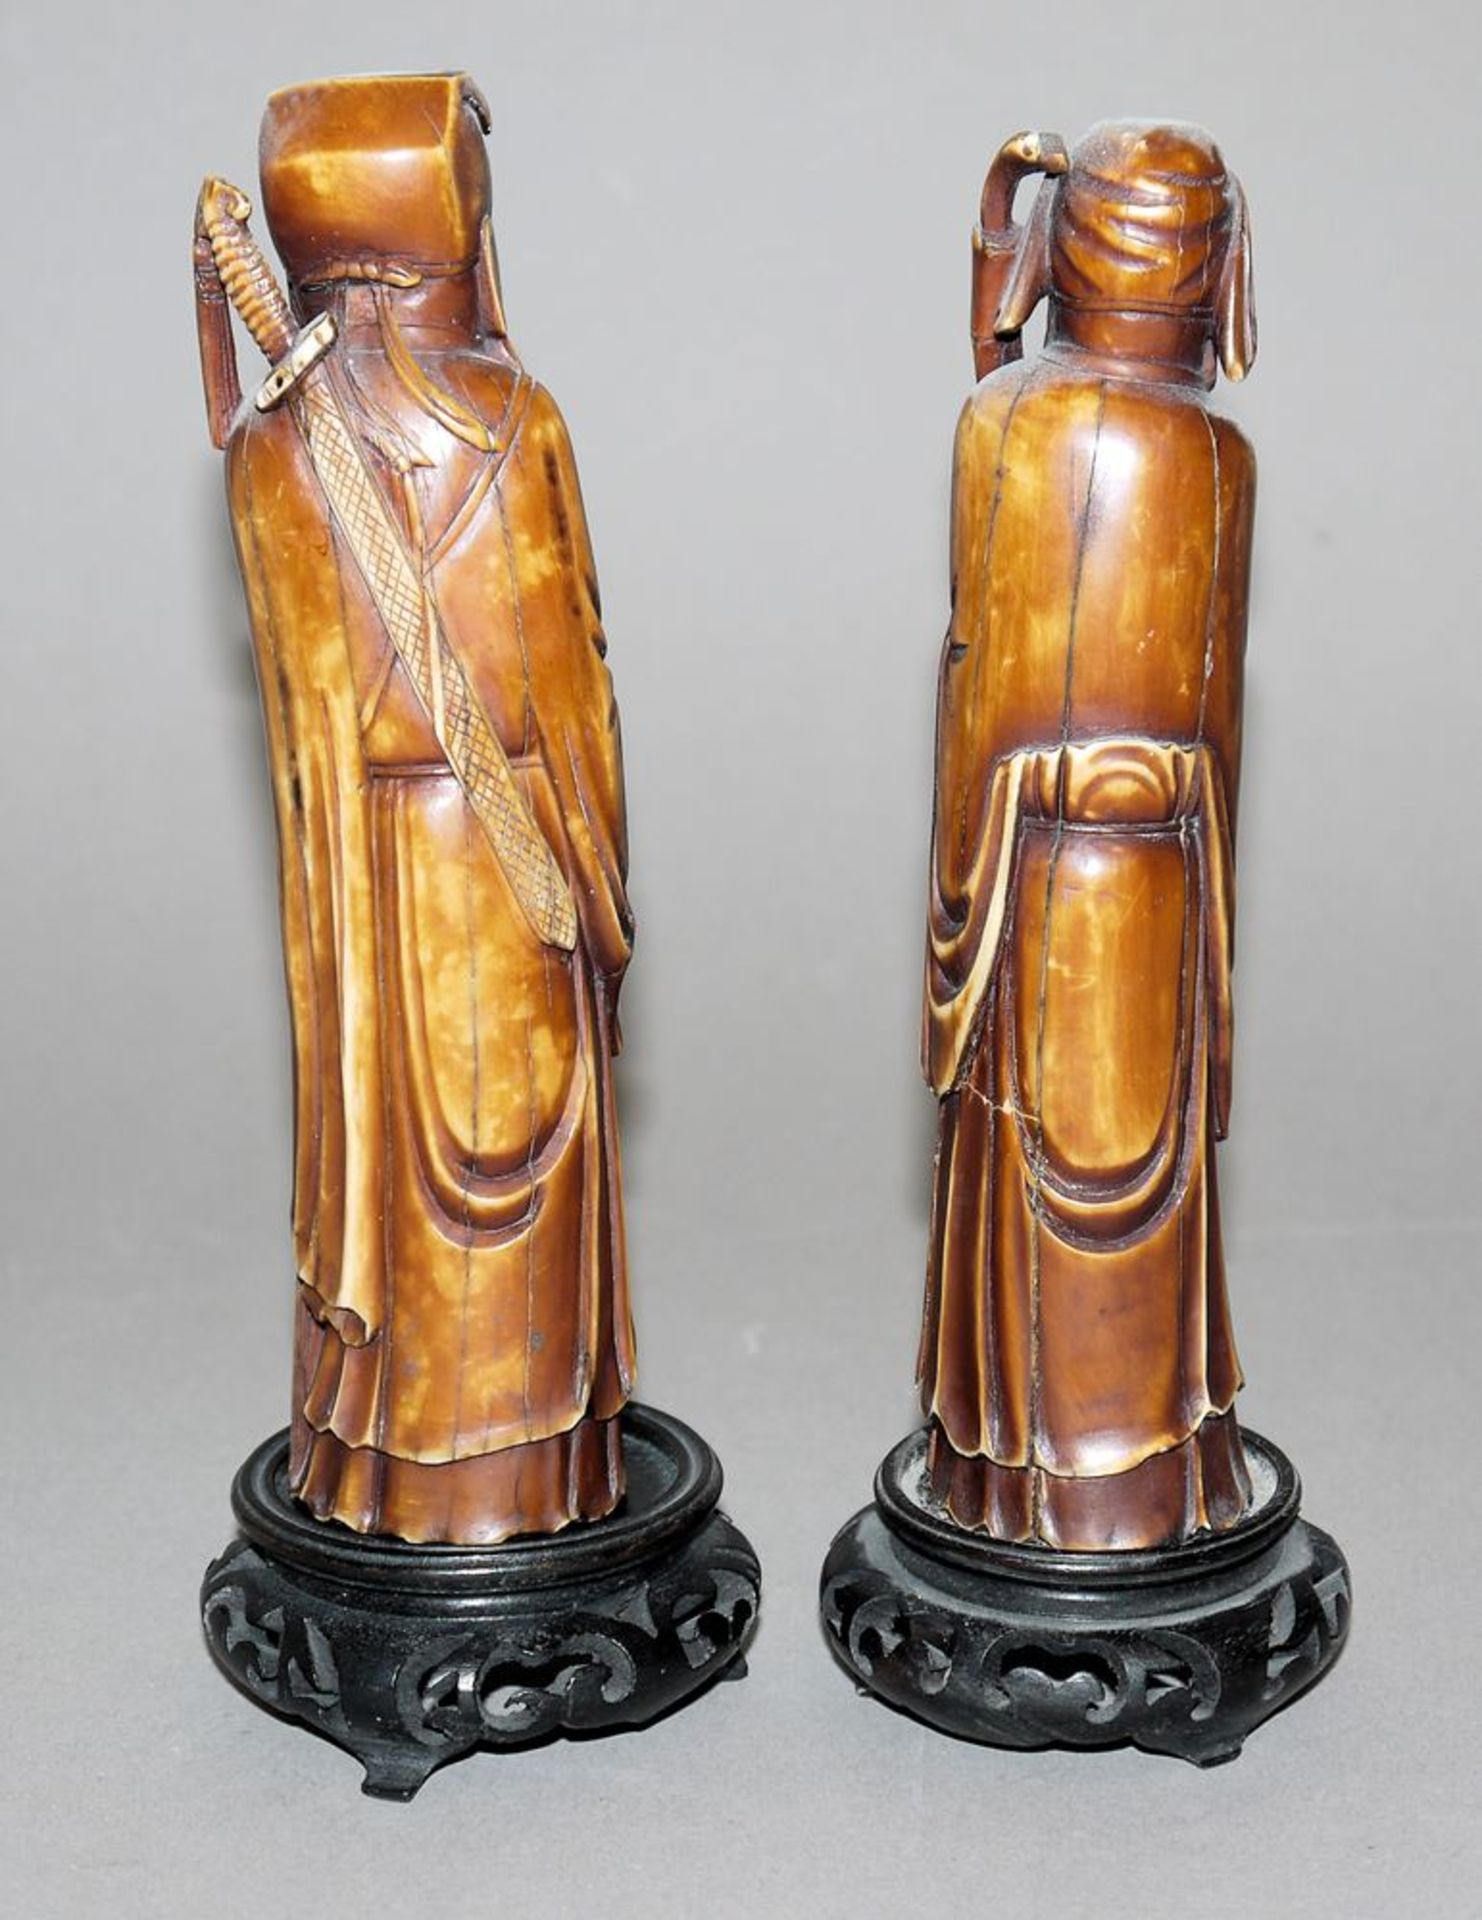 Zwei daoistische Unsterbliche, Elfenbein-Skulpturen der späten Qing-Zeit, China - Image 2 of 2